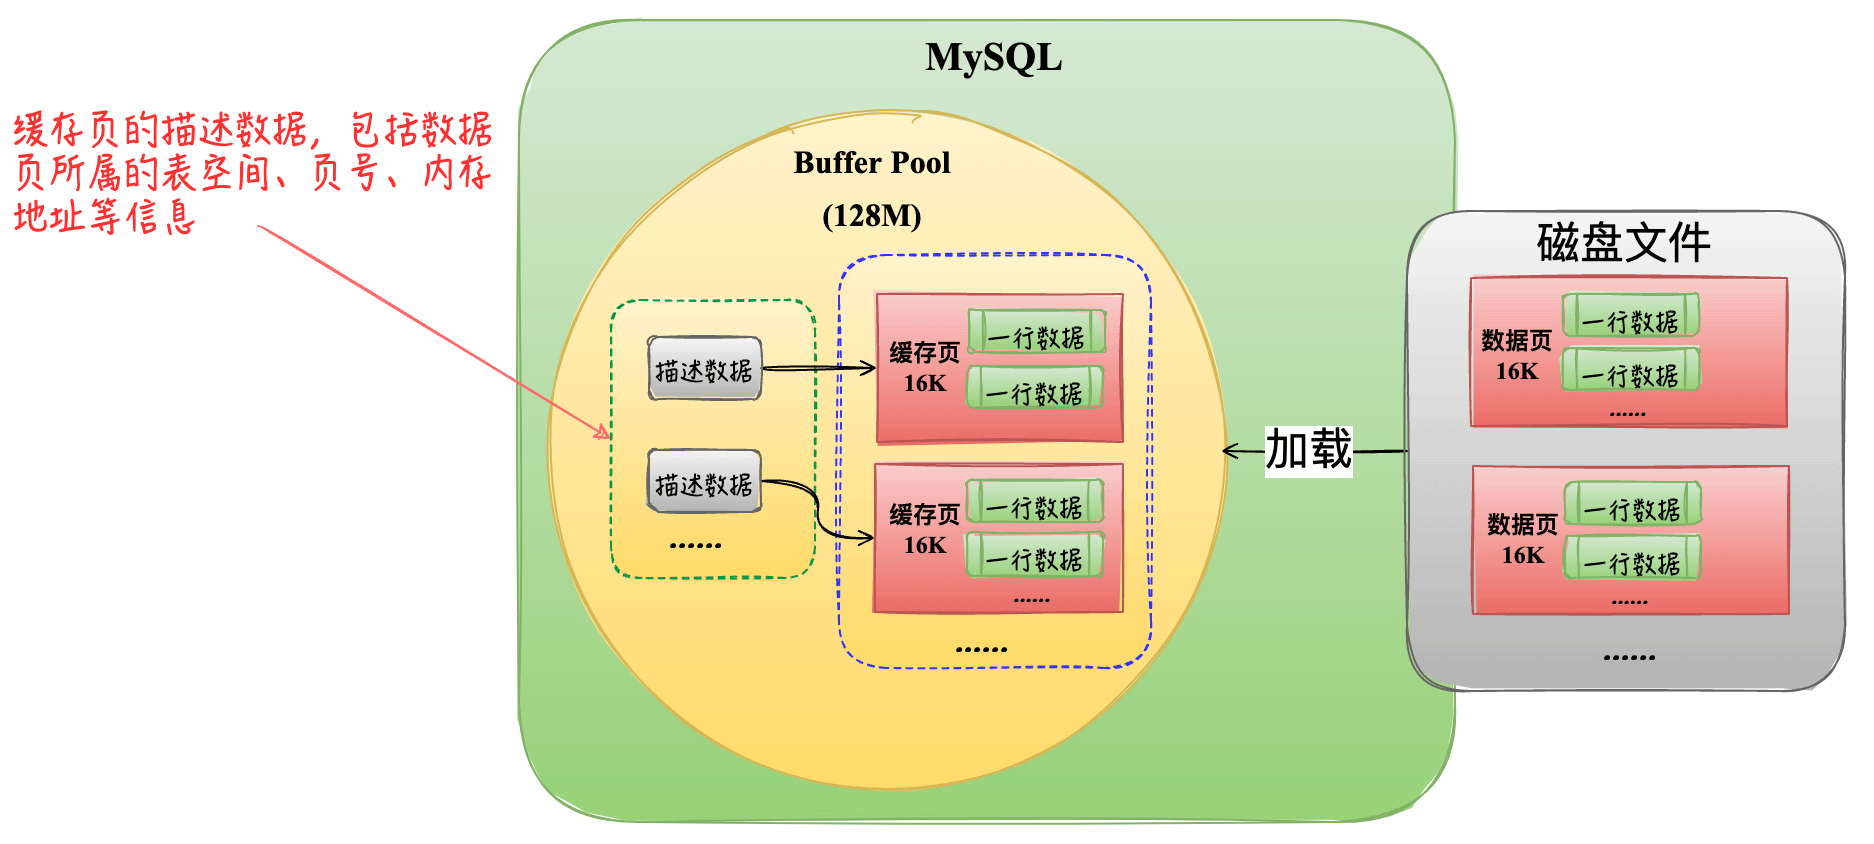 MySQL中Buffer Pool内存结构详情